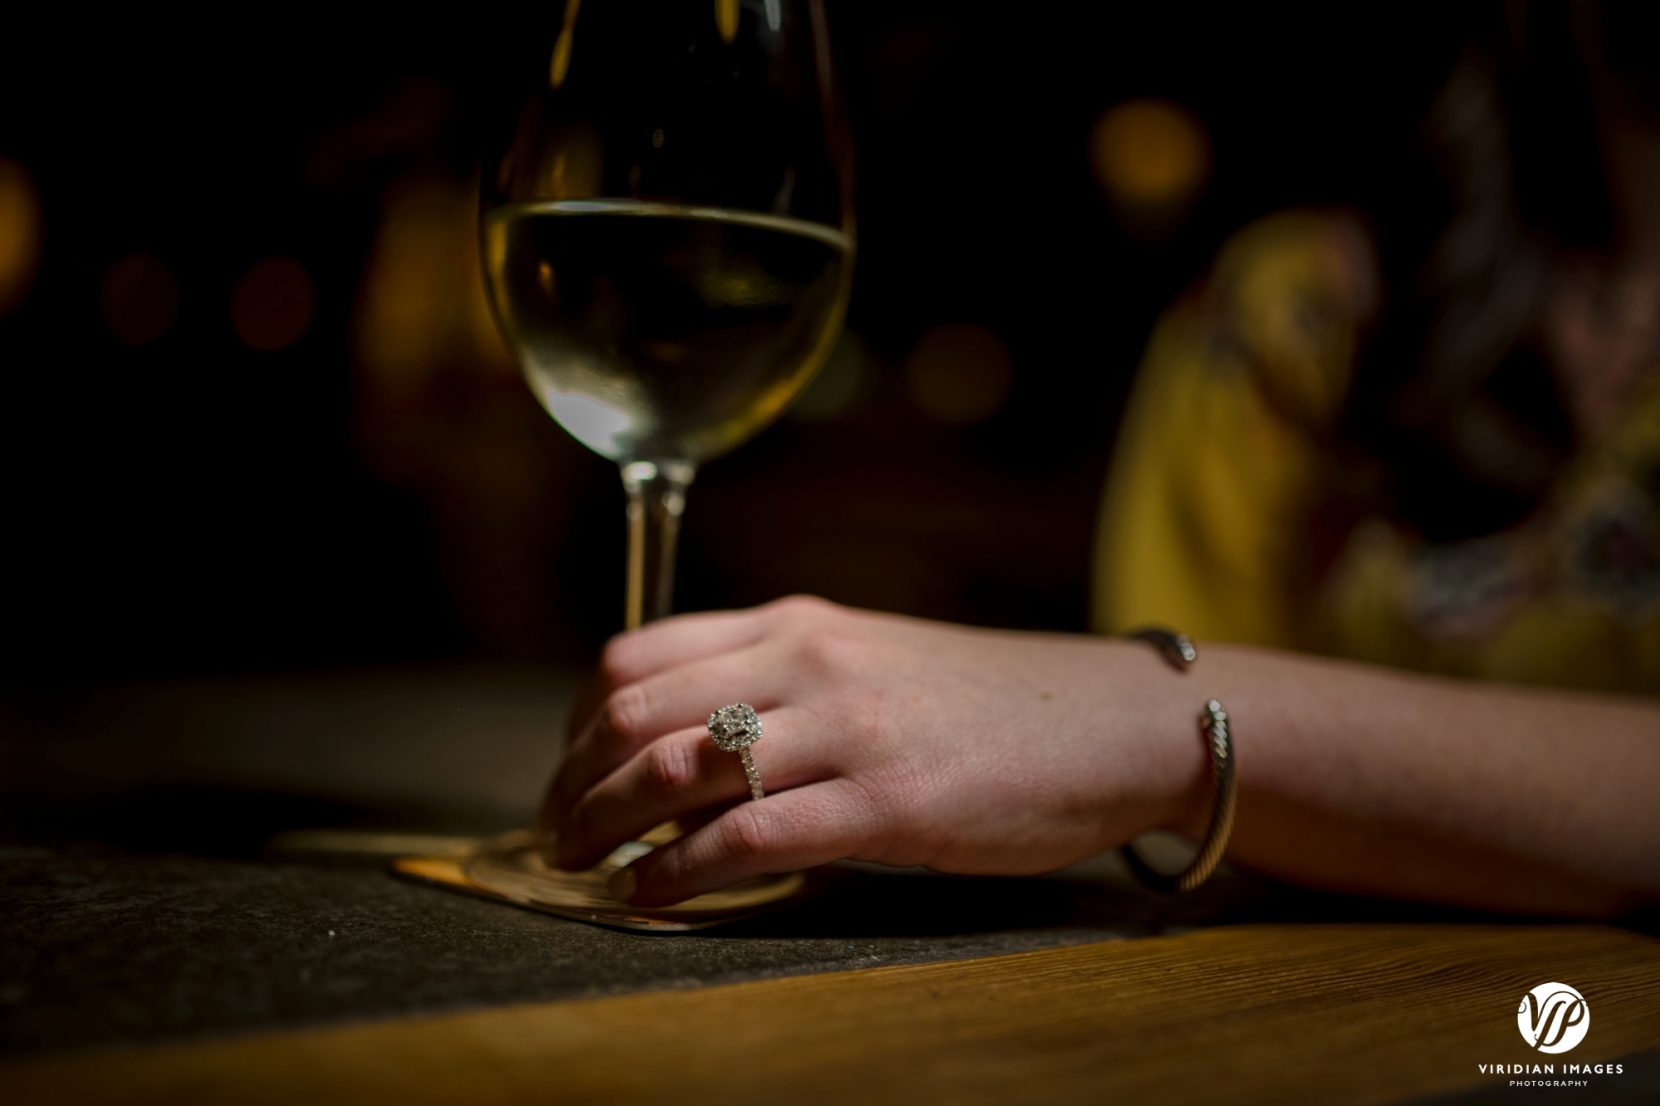 ring shot of girl holding glass of white wine